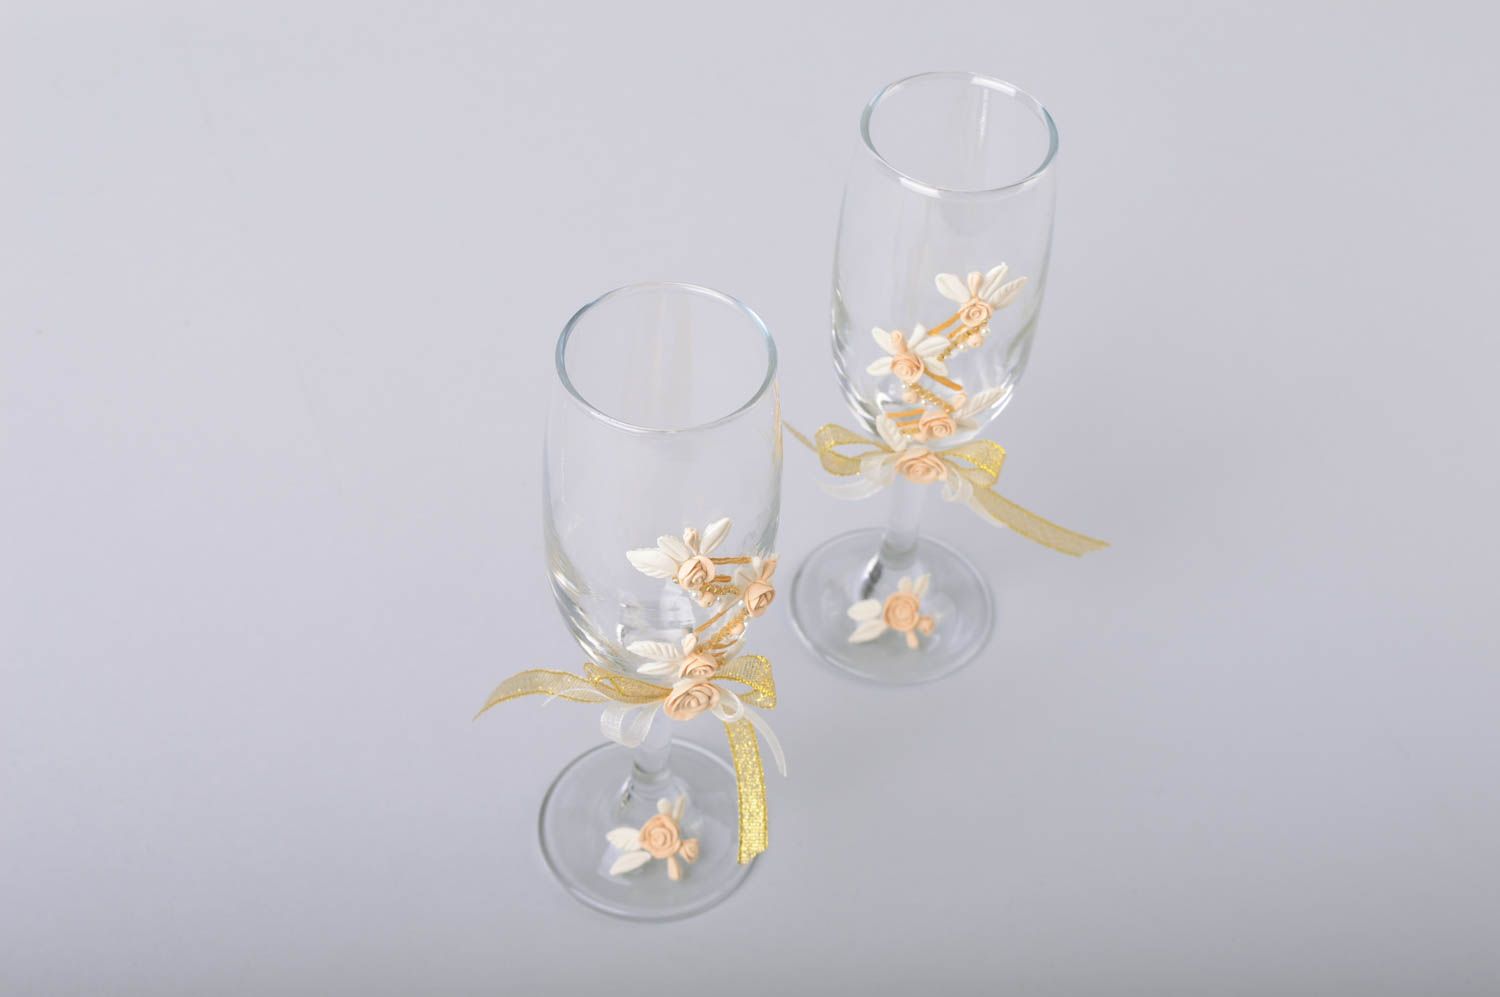 Deux flûtes en verre faites main décorées de porcelaine froide pour mariage photo 5